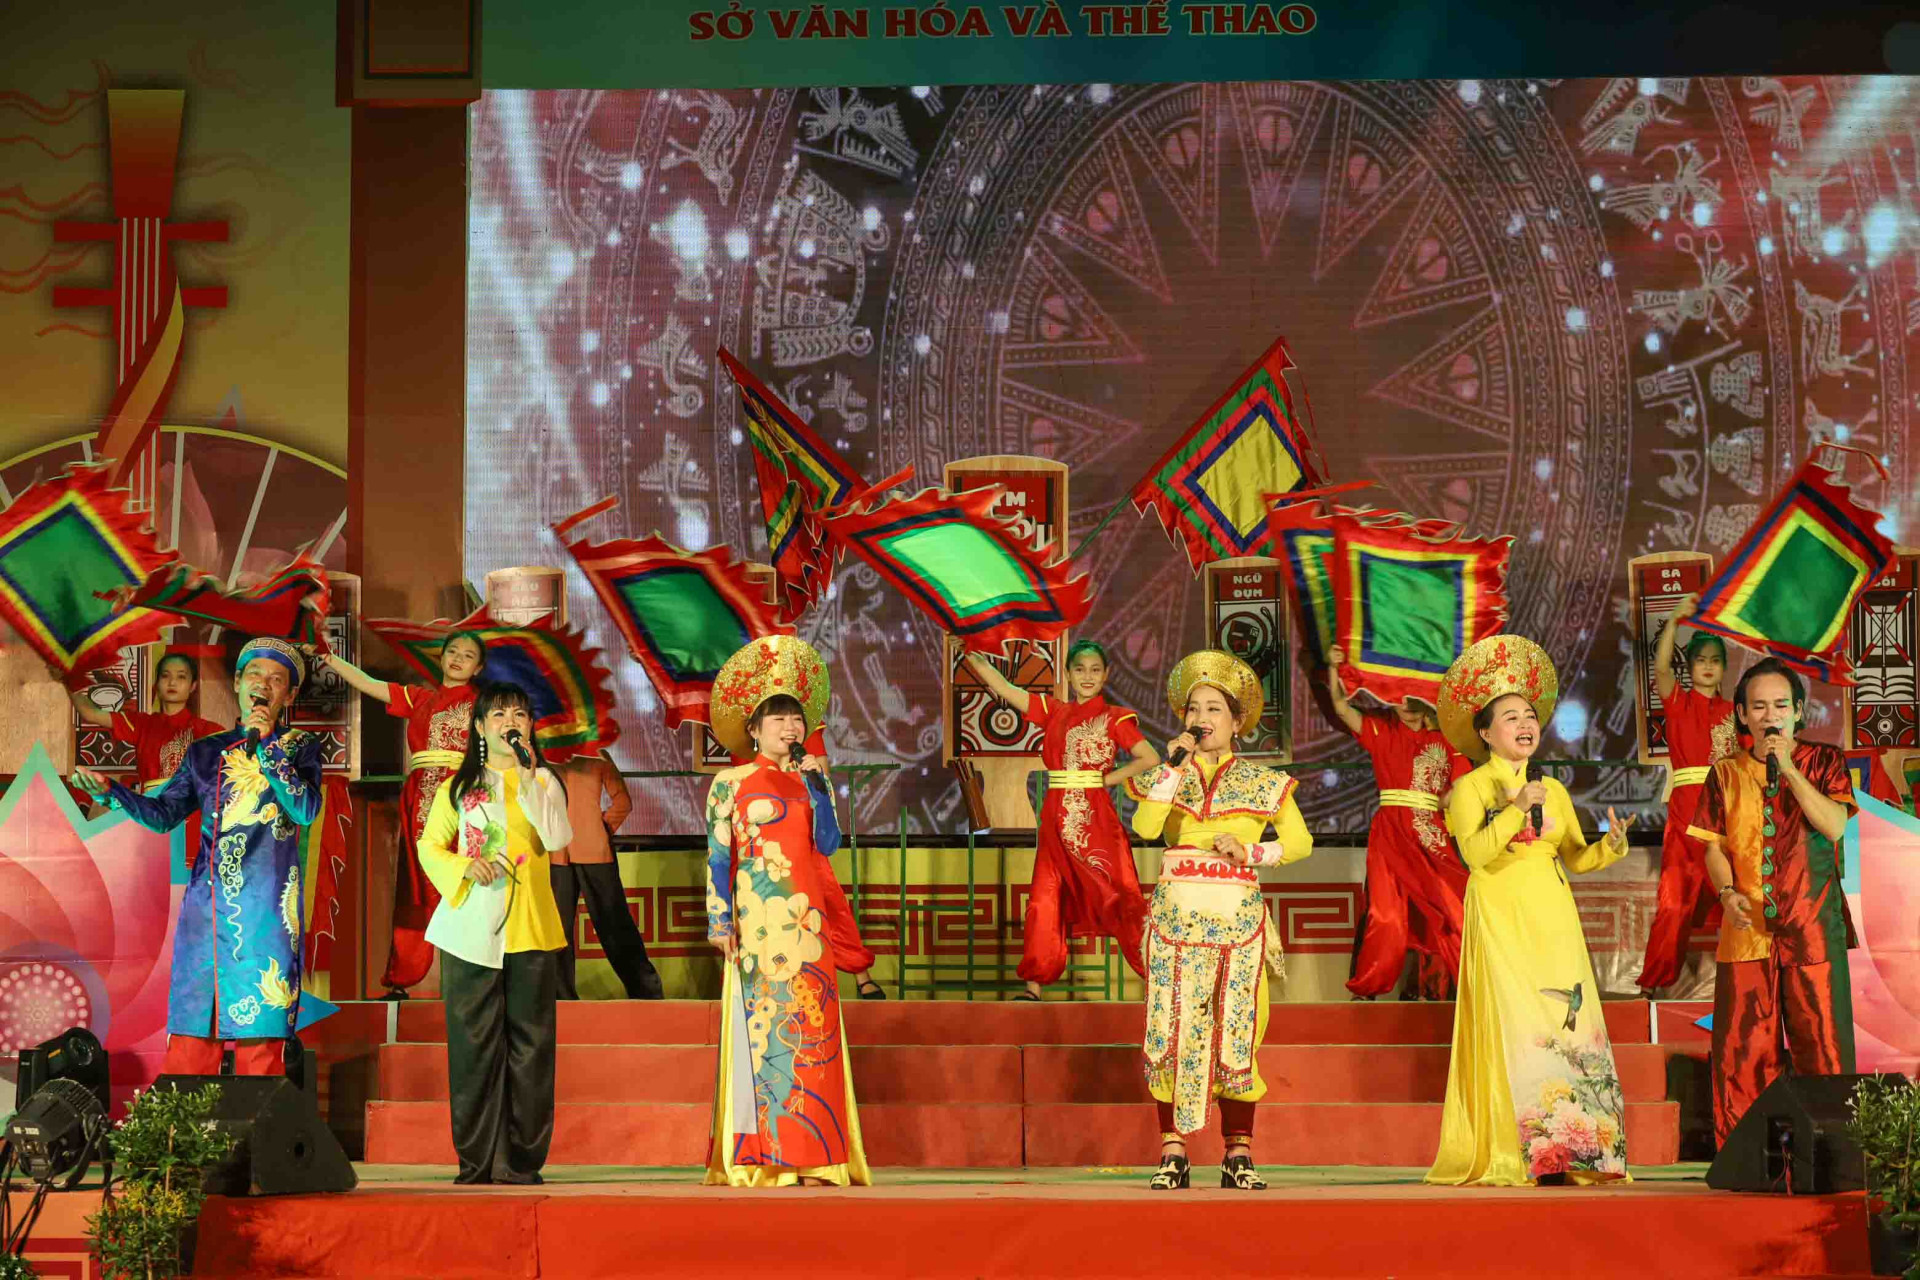 Đoàn nghệ thuật quần chúng tỉnh Phú Yên mang đến liên hoan một chương trình biểu diễn có sự đầu tư công phu với 4 tiết mục múa hát các làn điệu bài chòi và biểu diễn trích đoạn bài chòi Tiếng trống Mê Linh. 